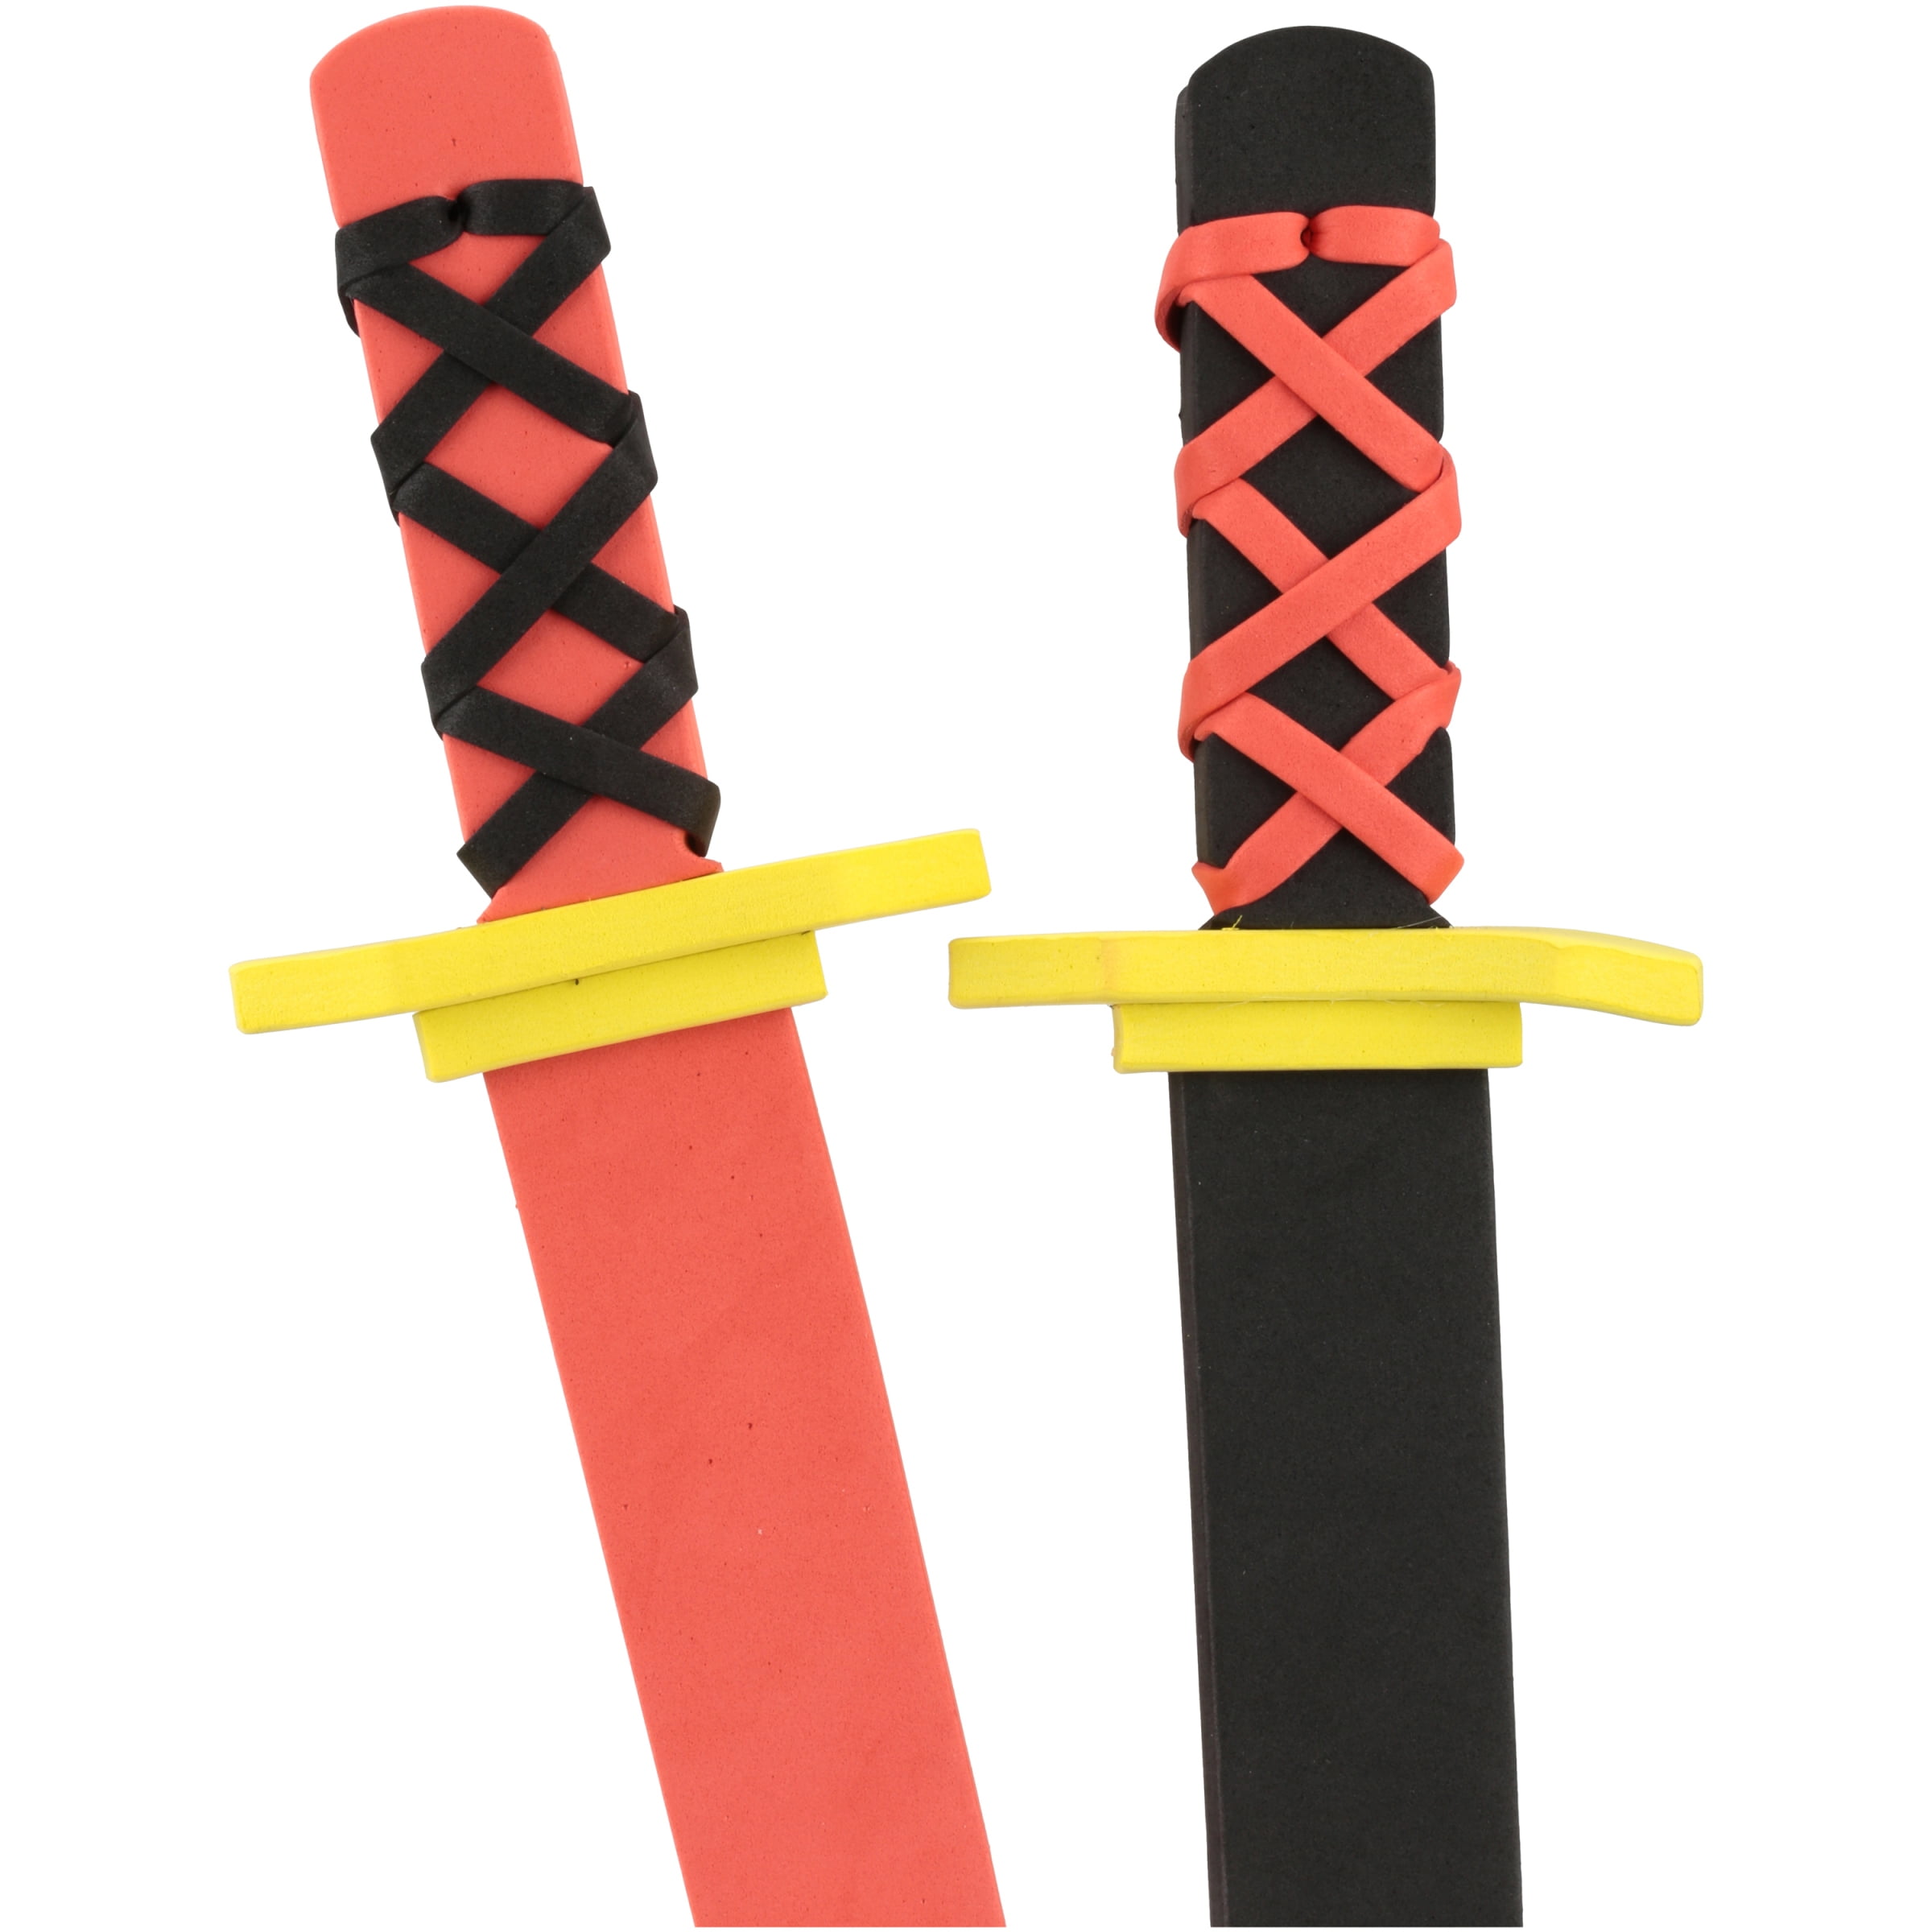 Foam Ninja Swords Set of 6 by Trademark Innovations Safe & Fun 